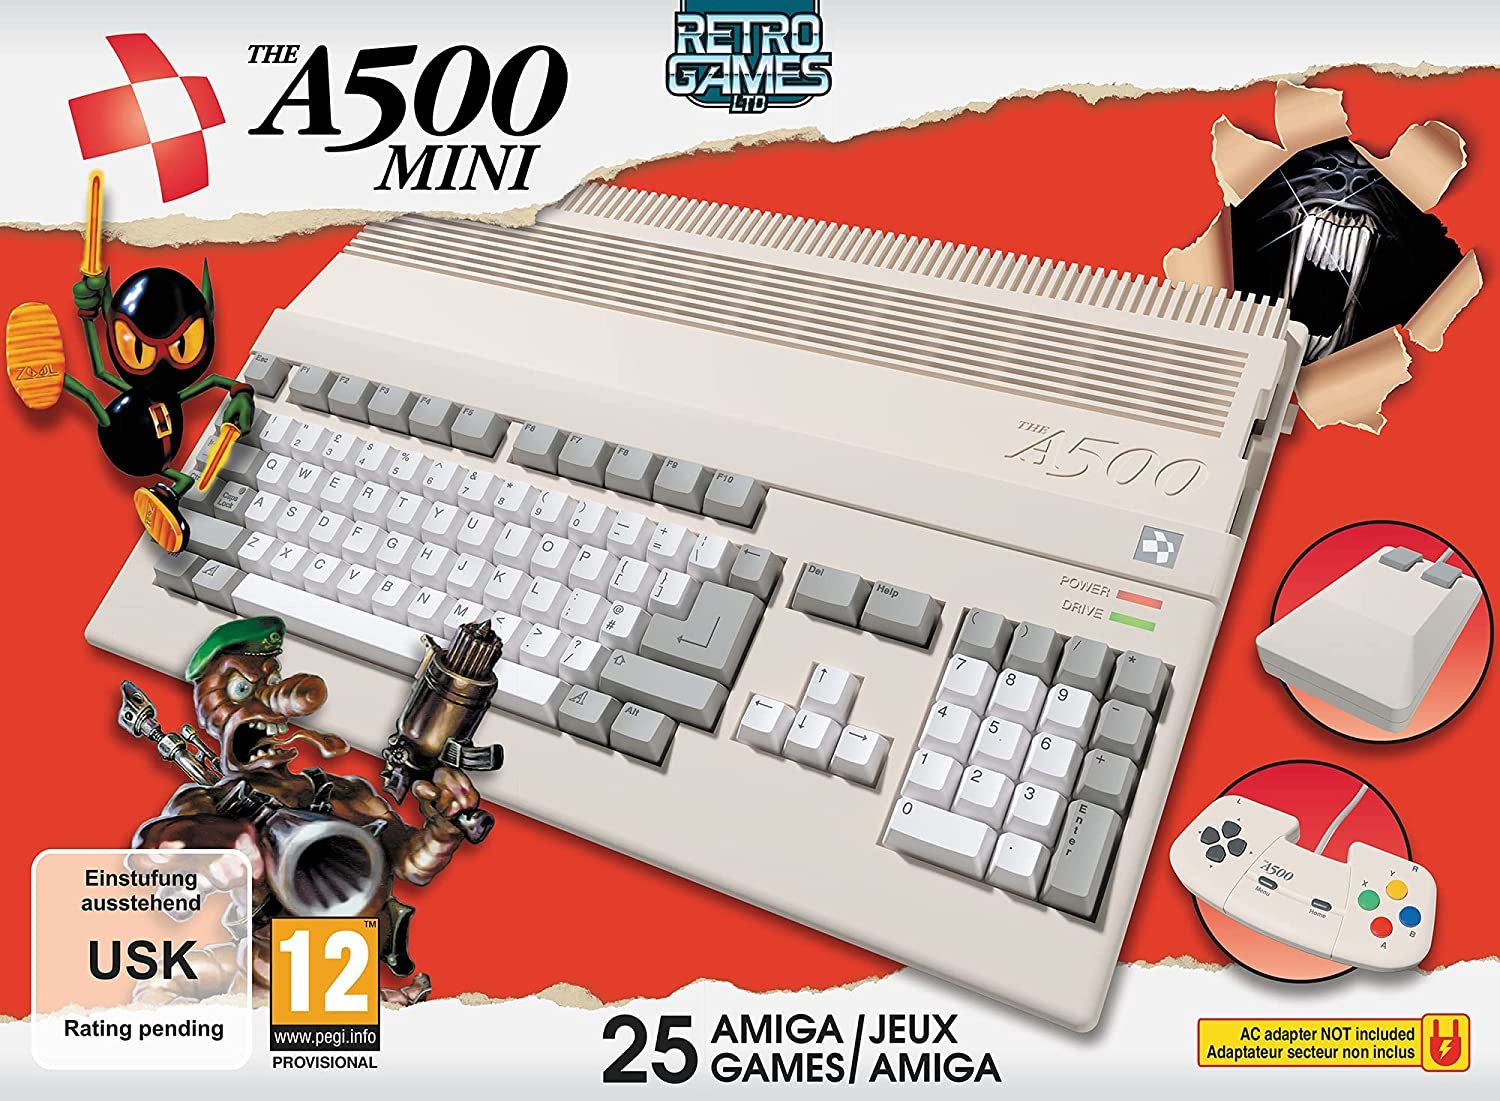 81f1T94o0NL AC SL1500 - Il leggendario computer Amiga 500 sta ottenendo un riavvio retrò